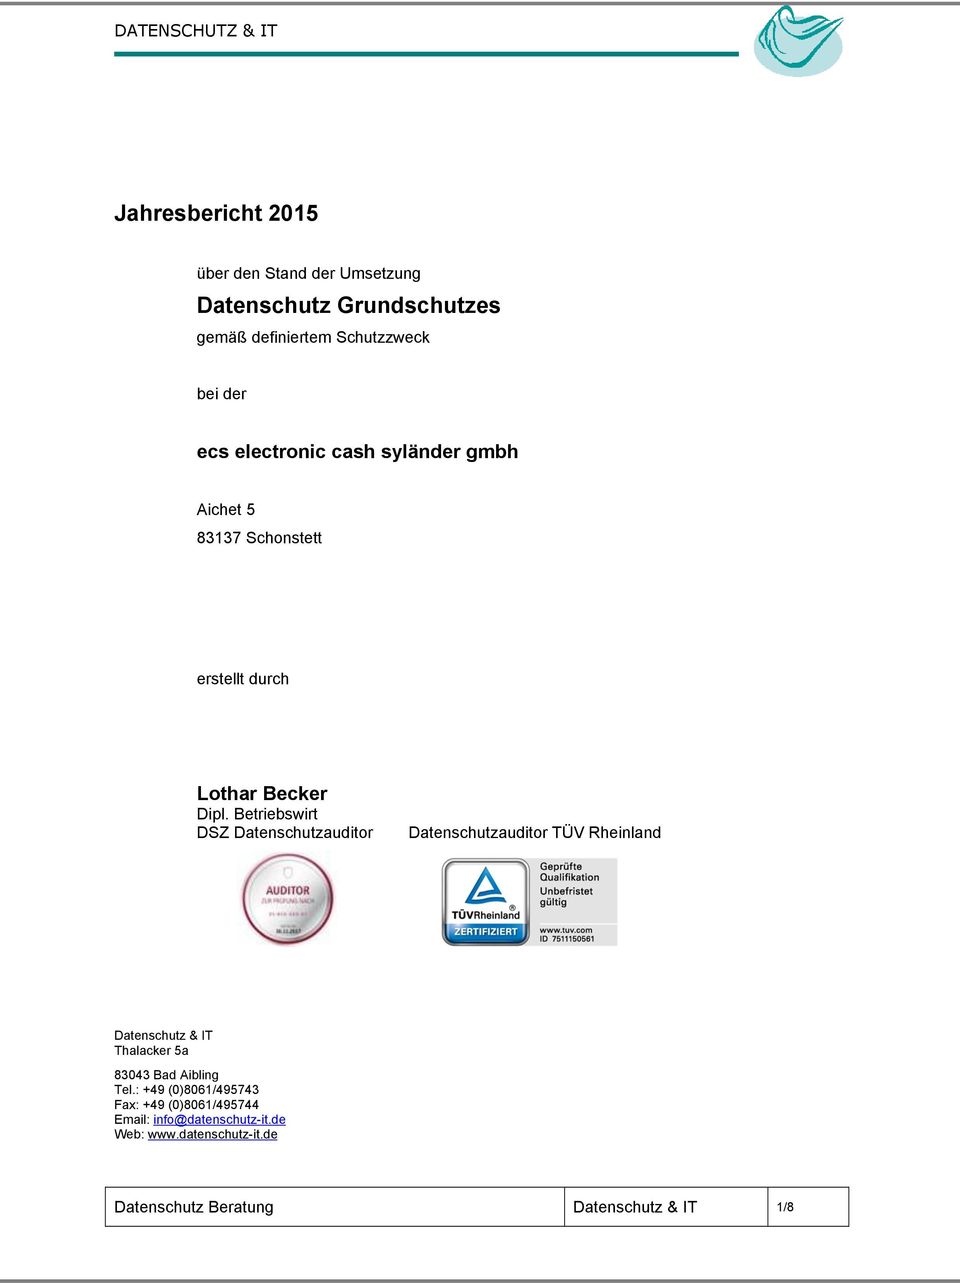 Betriebswirt DSZ Datenschutzauditor Datenschutzauditor TÜV Rheinland Datenschutz & IT Thalacker 5a 83043 Bad Aibling